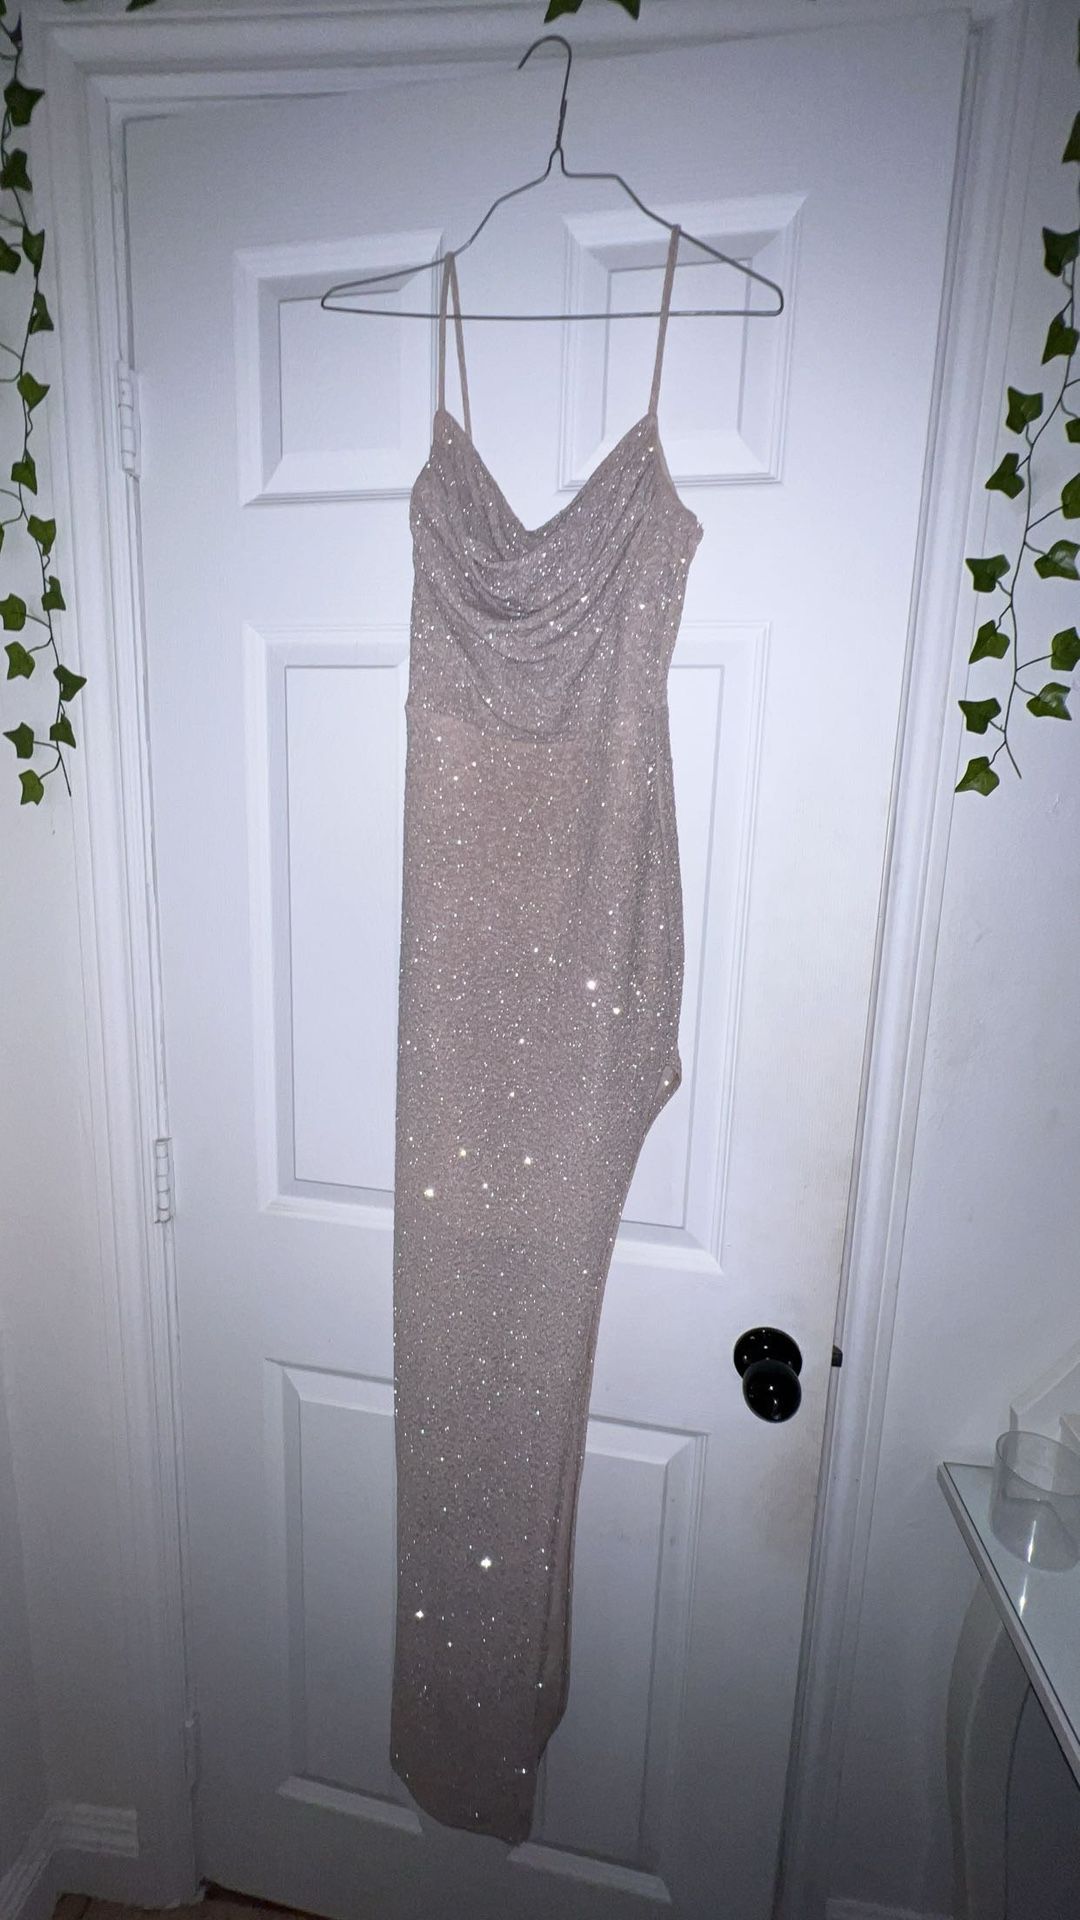 Glittery Event Dress